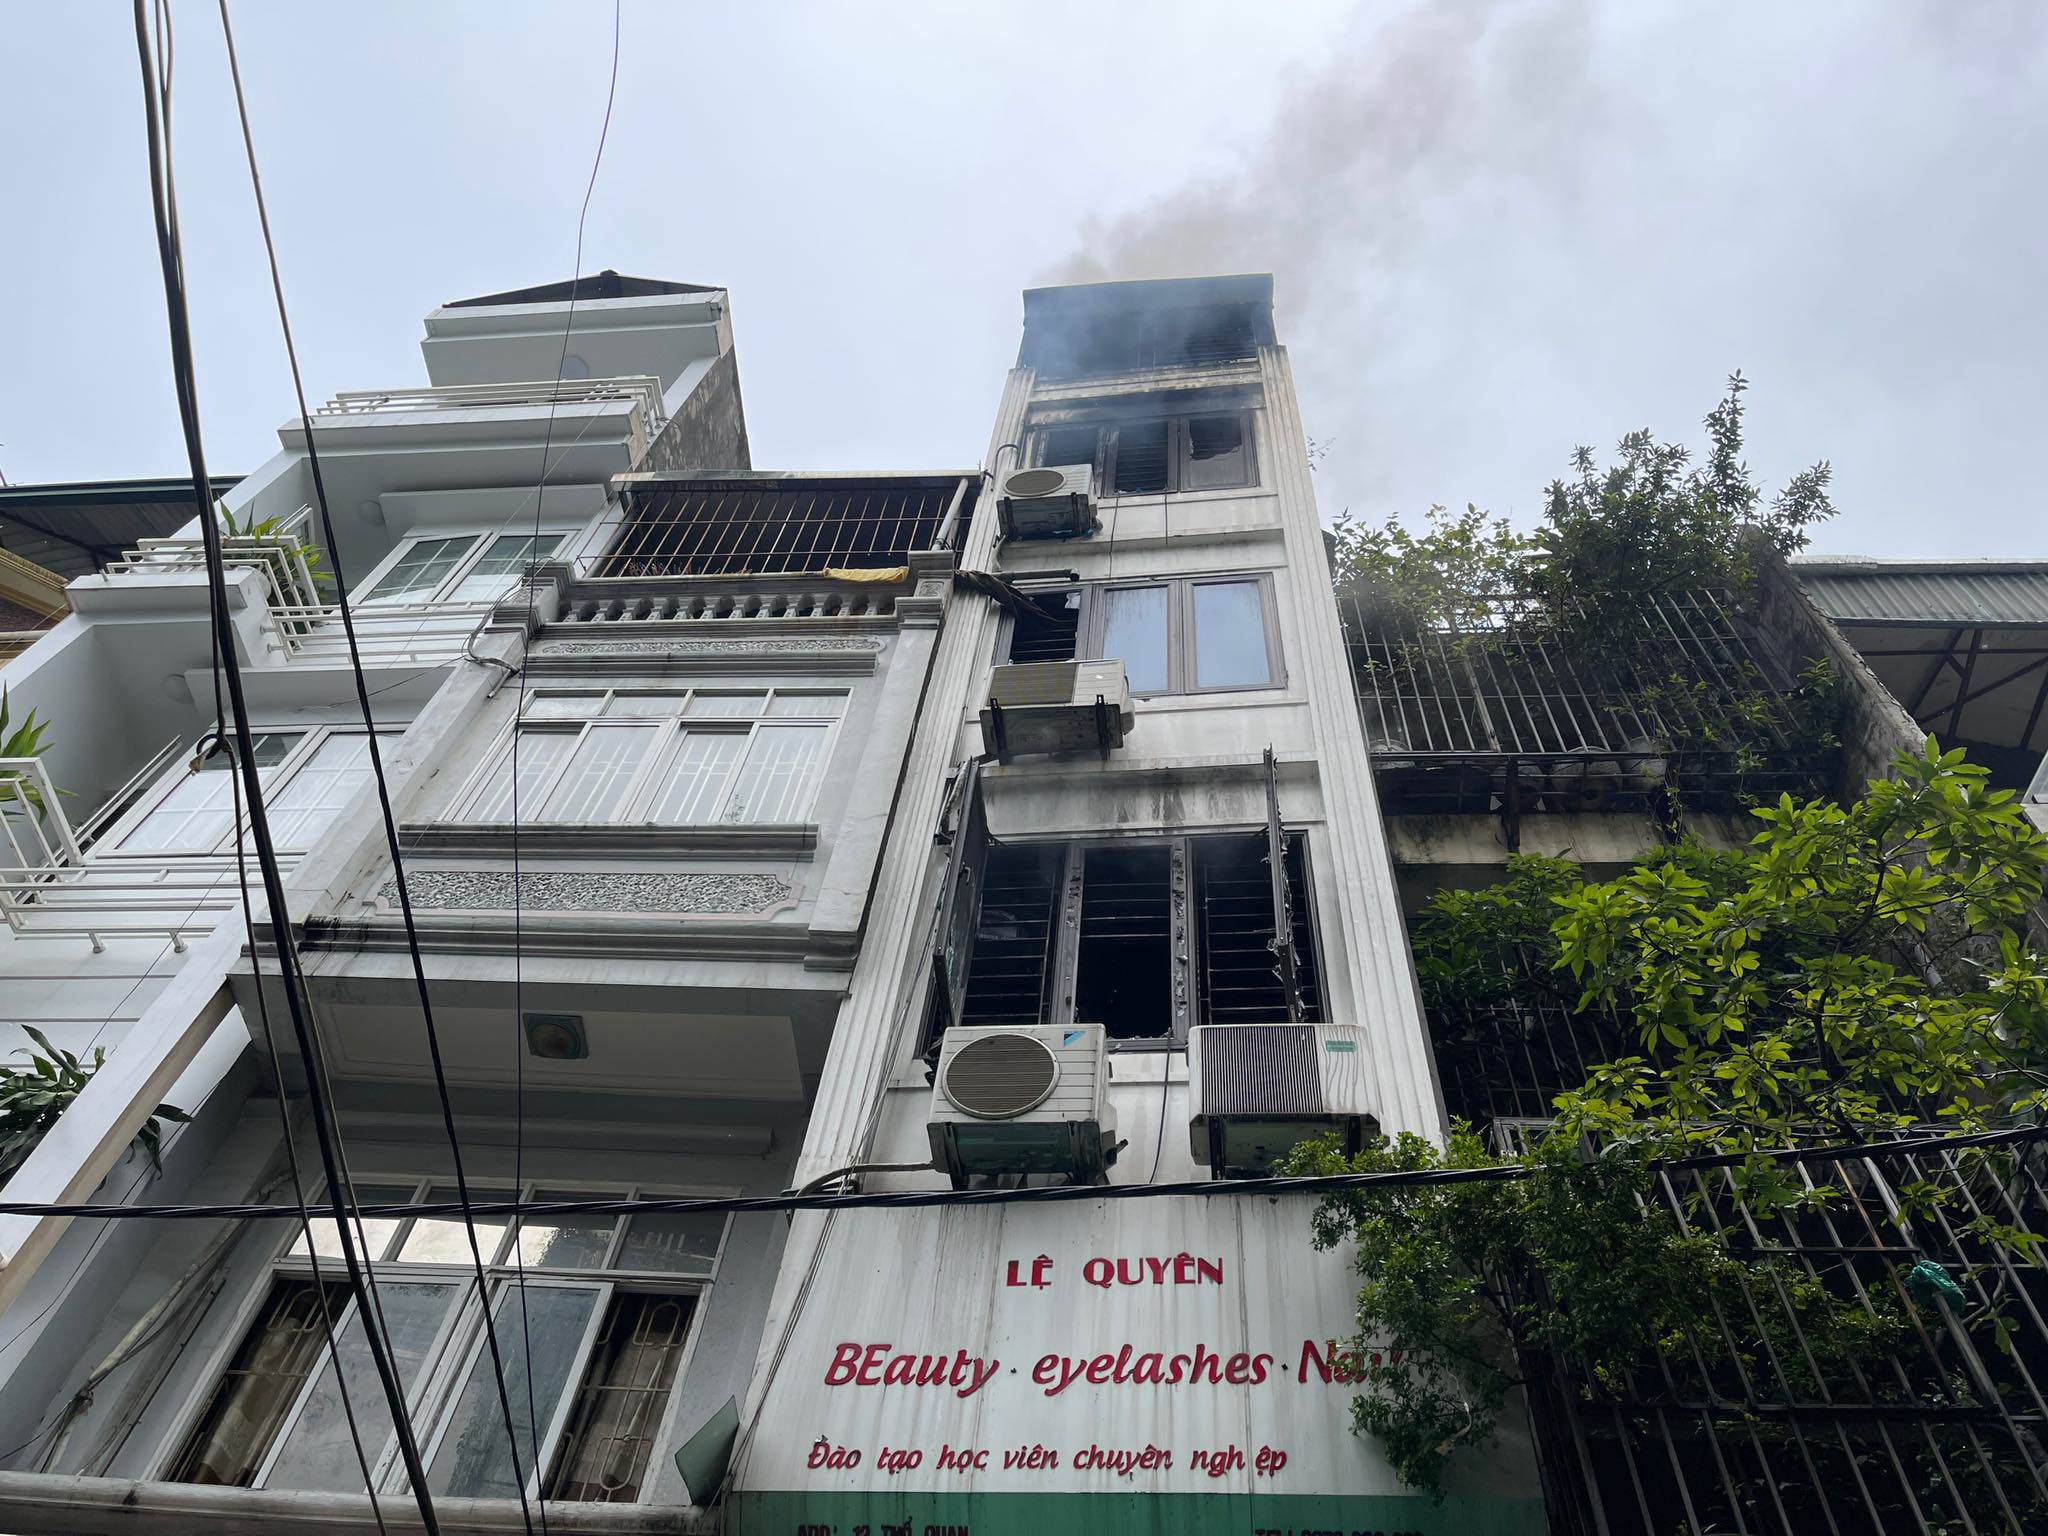 Vụ cháy 3 người tử vong ở Hà Nội: Nhiều cảnh sát bị thương trong lúc dập lửa - 1